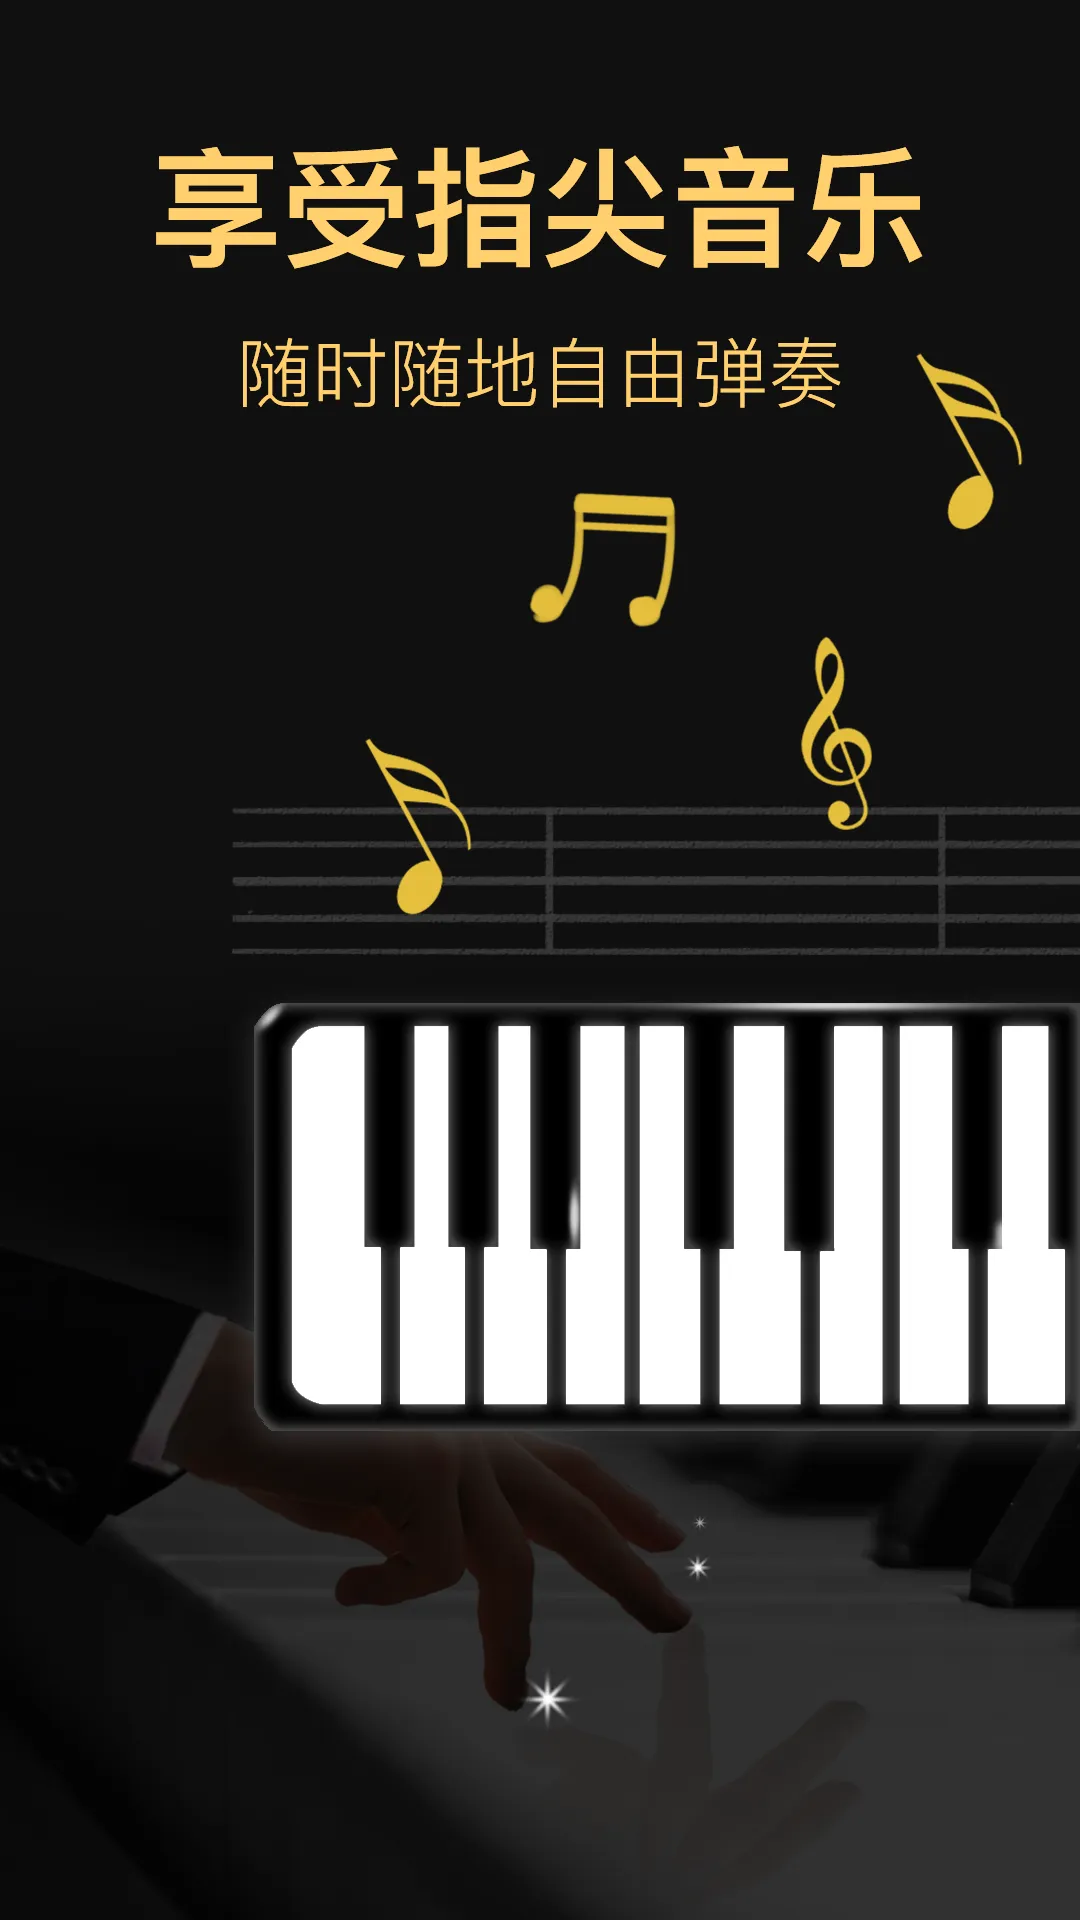 光遇钢琴自动弹奏软件哪个好 光遇钢琴自动弹奏软件app推荐合集